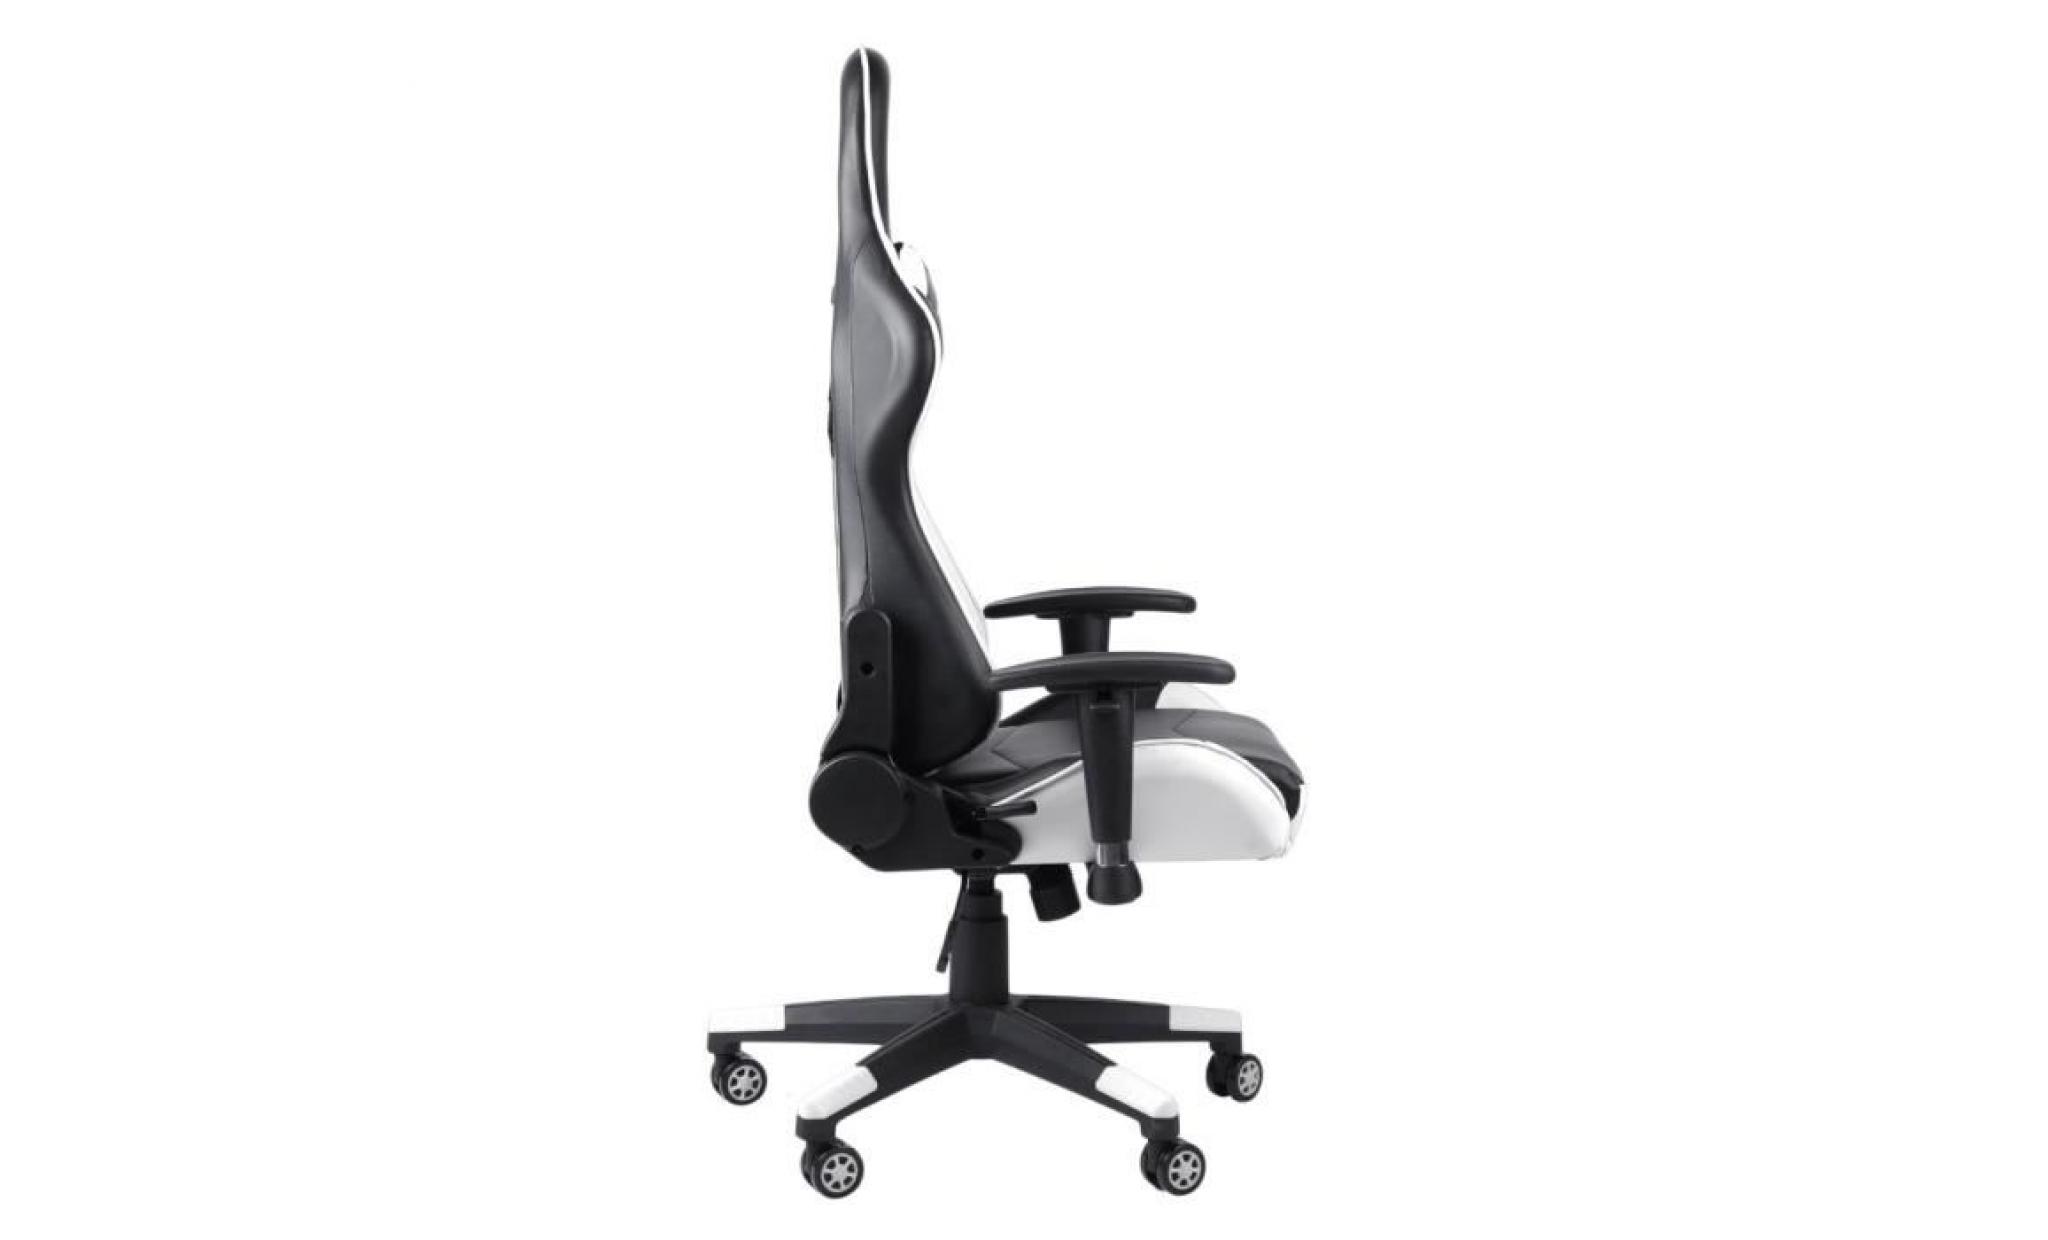 leshp chaise de bureau fauteuil de bureau gaming design baquet   style contemporain   blanc pas cher